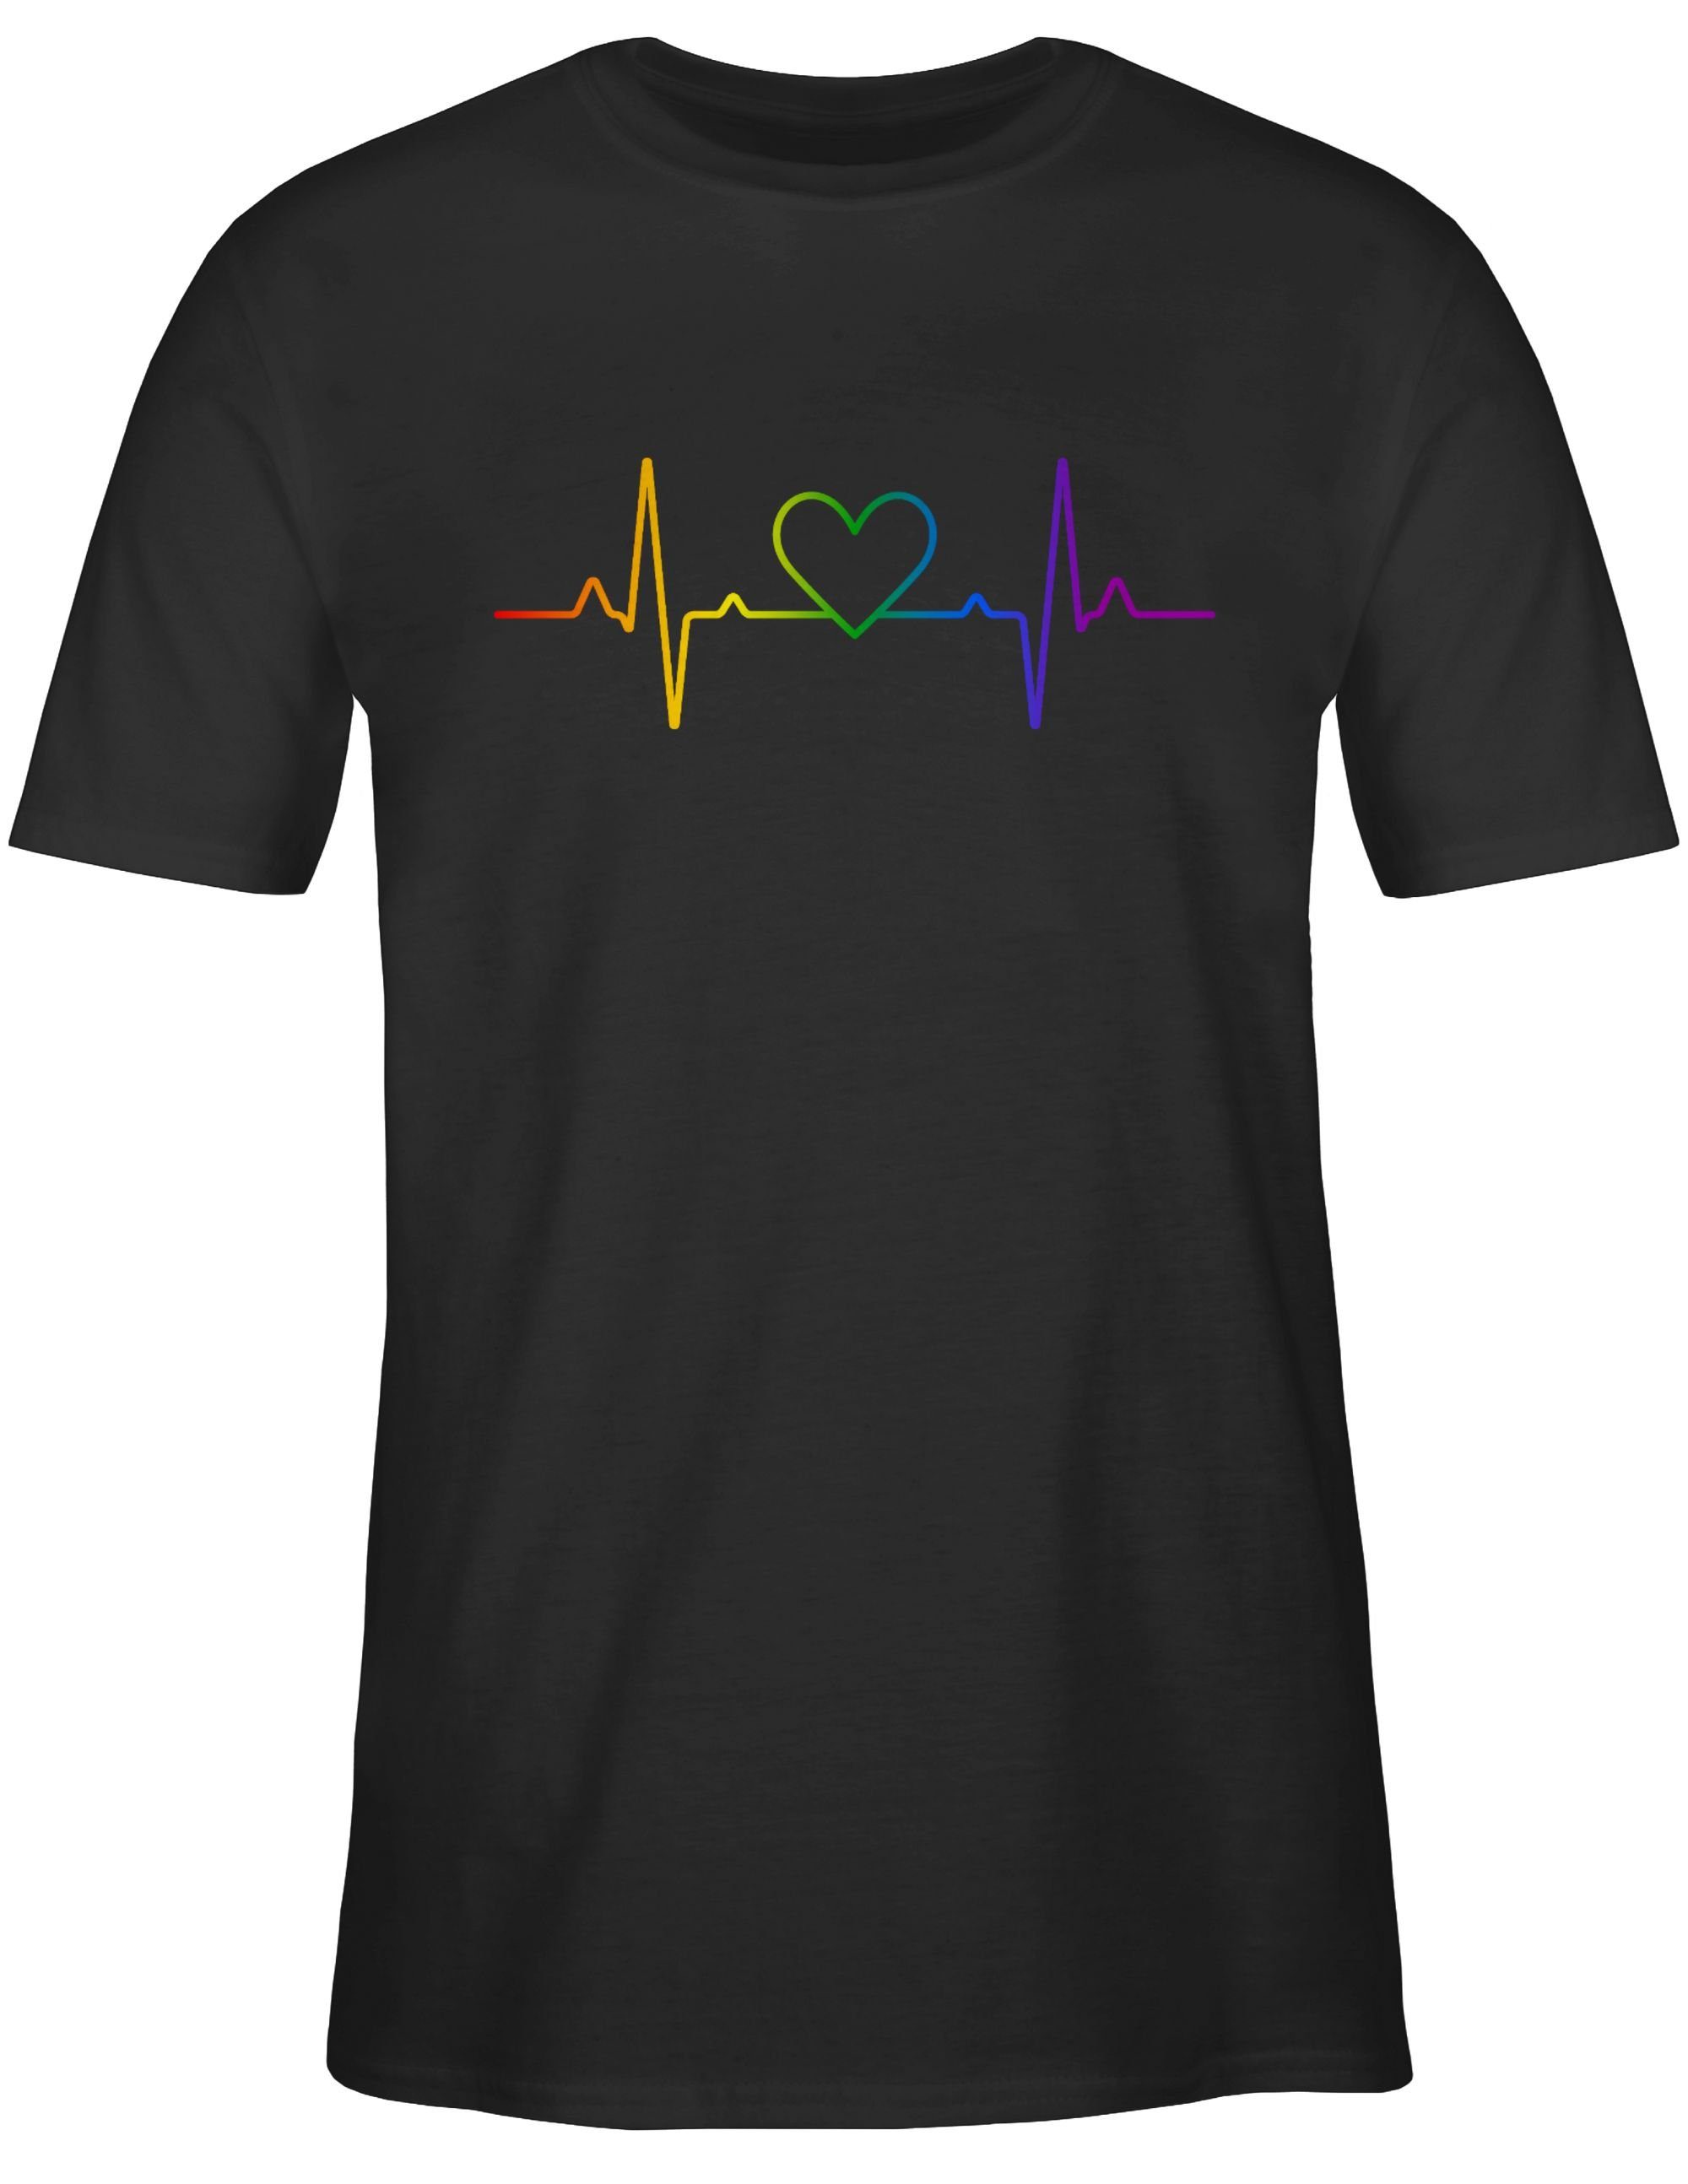 Kleidung Regenbogen 02 T-Shirt Shirtracer Pride LGBT Herzschlag Schwarz